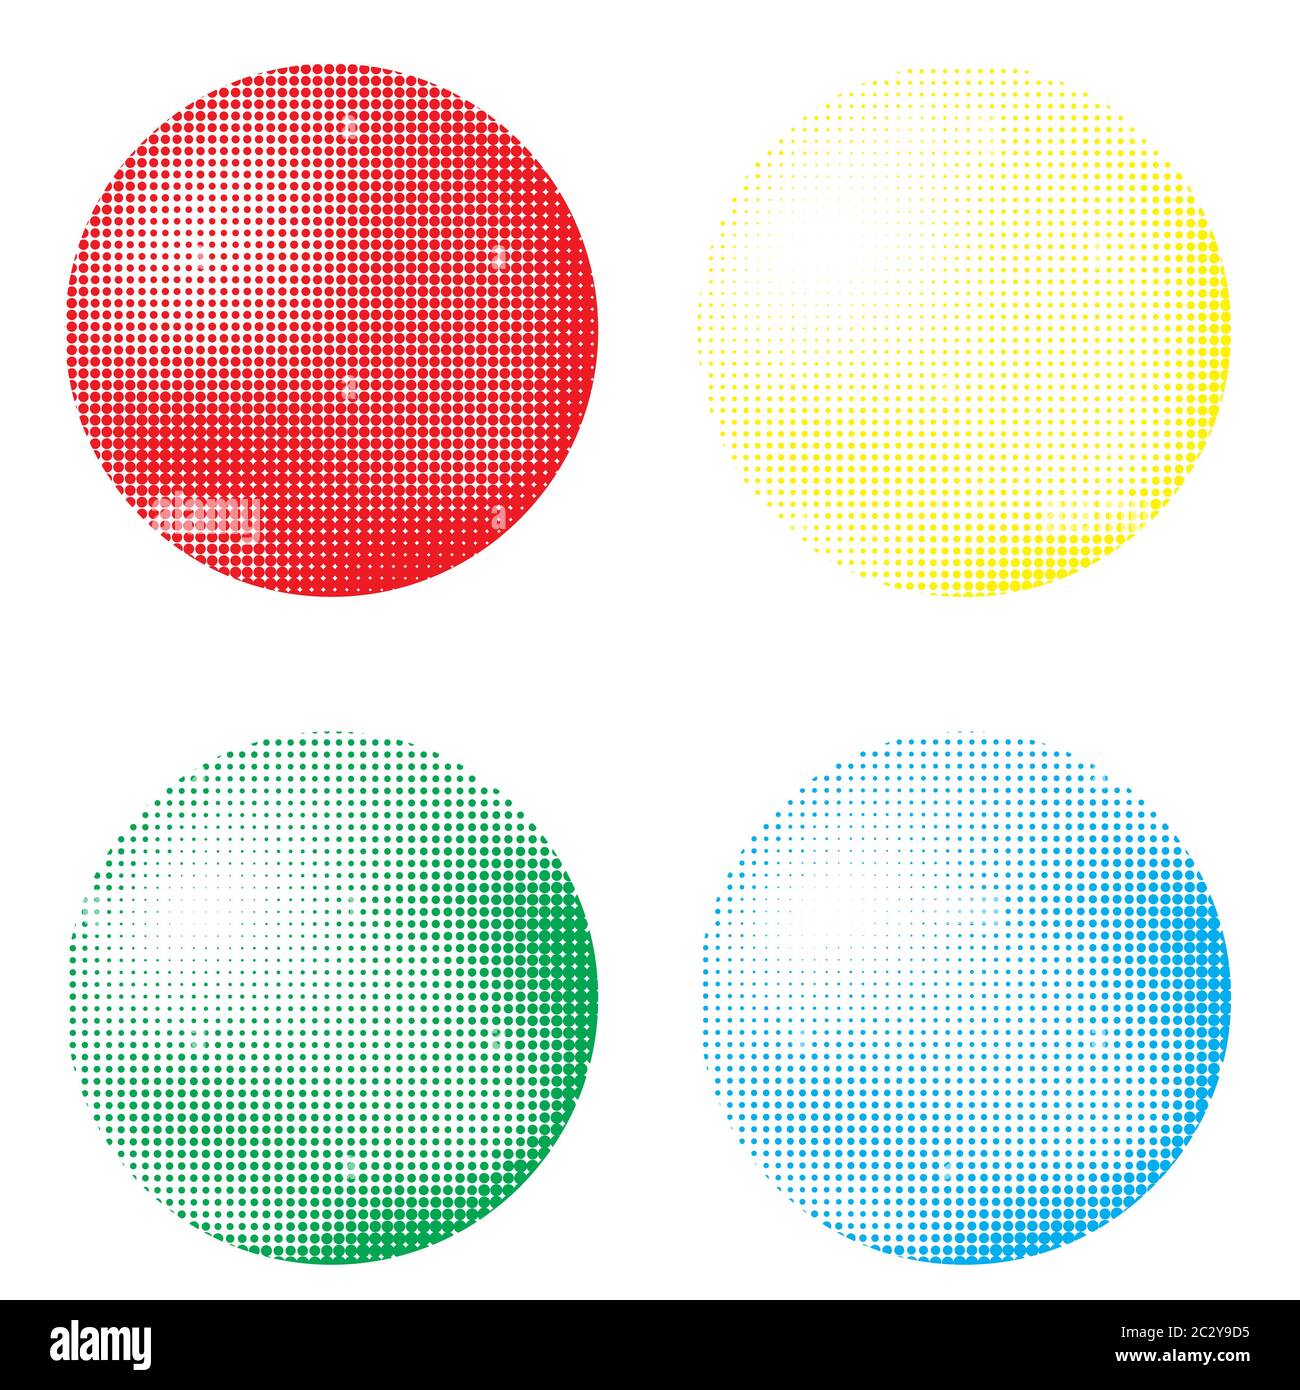 Trò chơi trong bộ quả bóng màu sắc và bộ chấm sẽ giúp bạn kiểm tra thị lực màu đỏ xanh nền một cách thú vị và đầy hứng khởi. Điều này không chỉ giúp bạn xác định sức khỏe của đôi mắt, mà còn tạo niềm vui và kích thích khả năng tư duy của bạn.